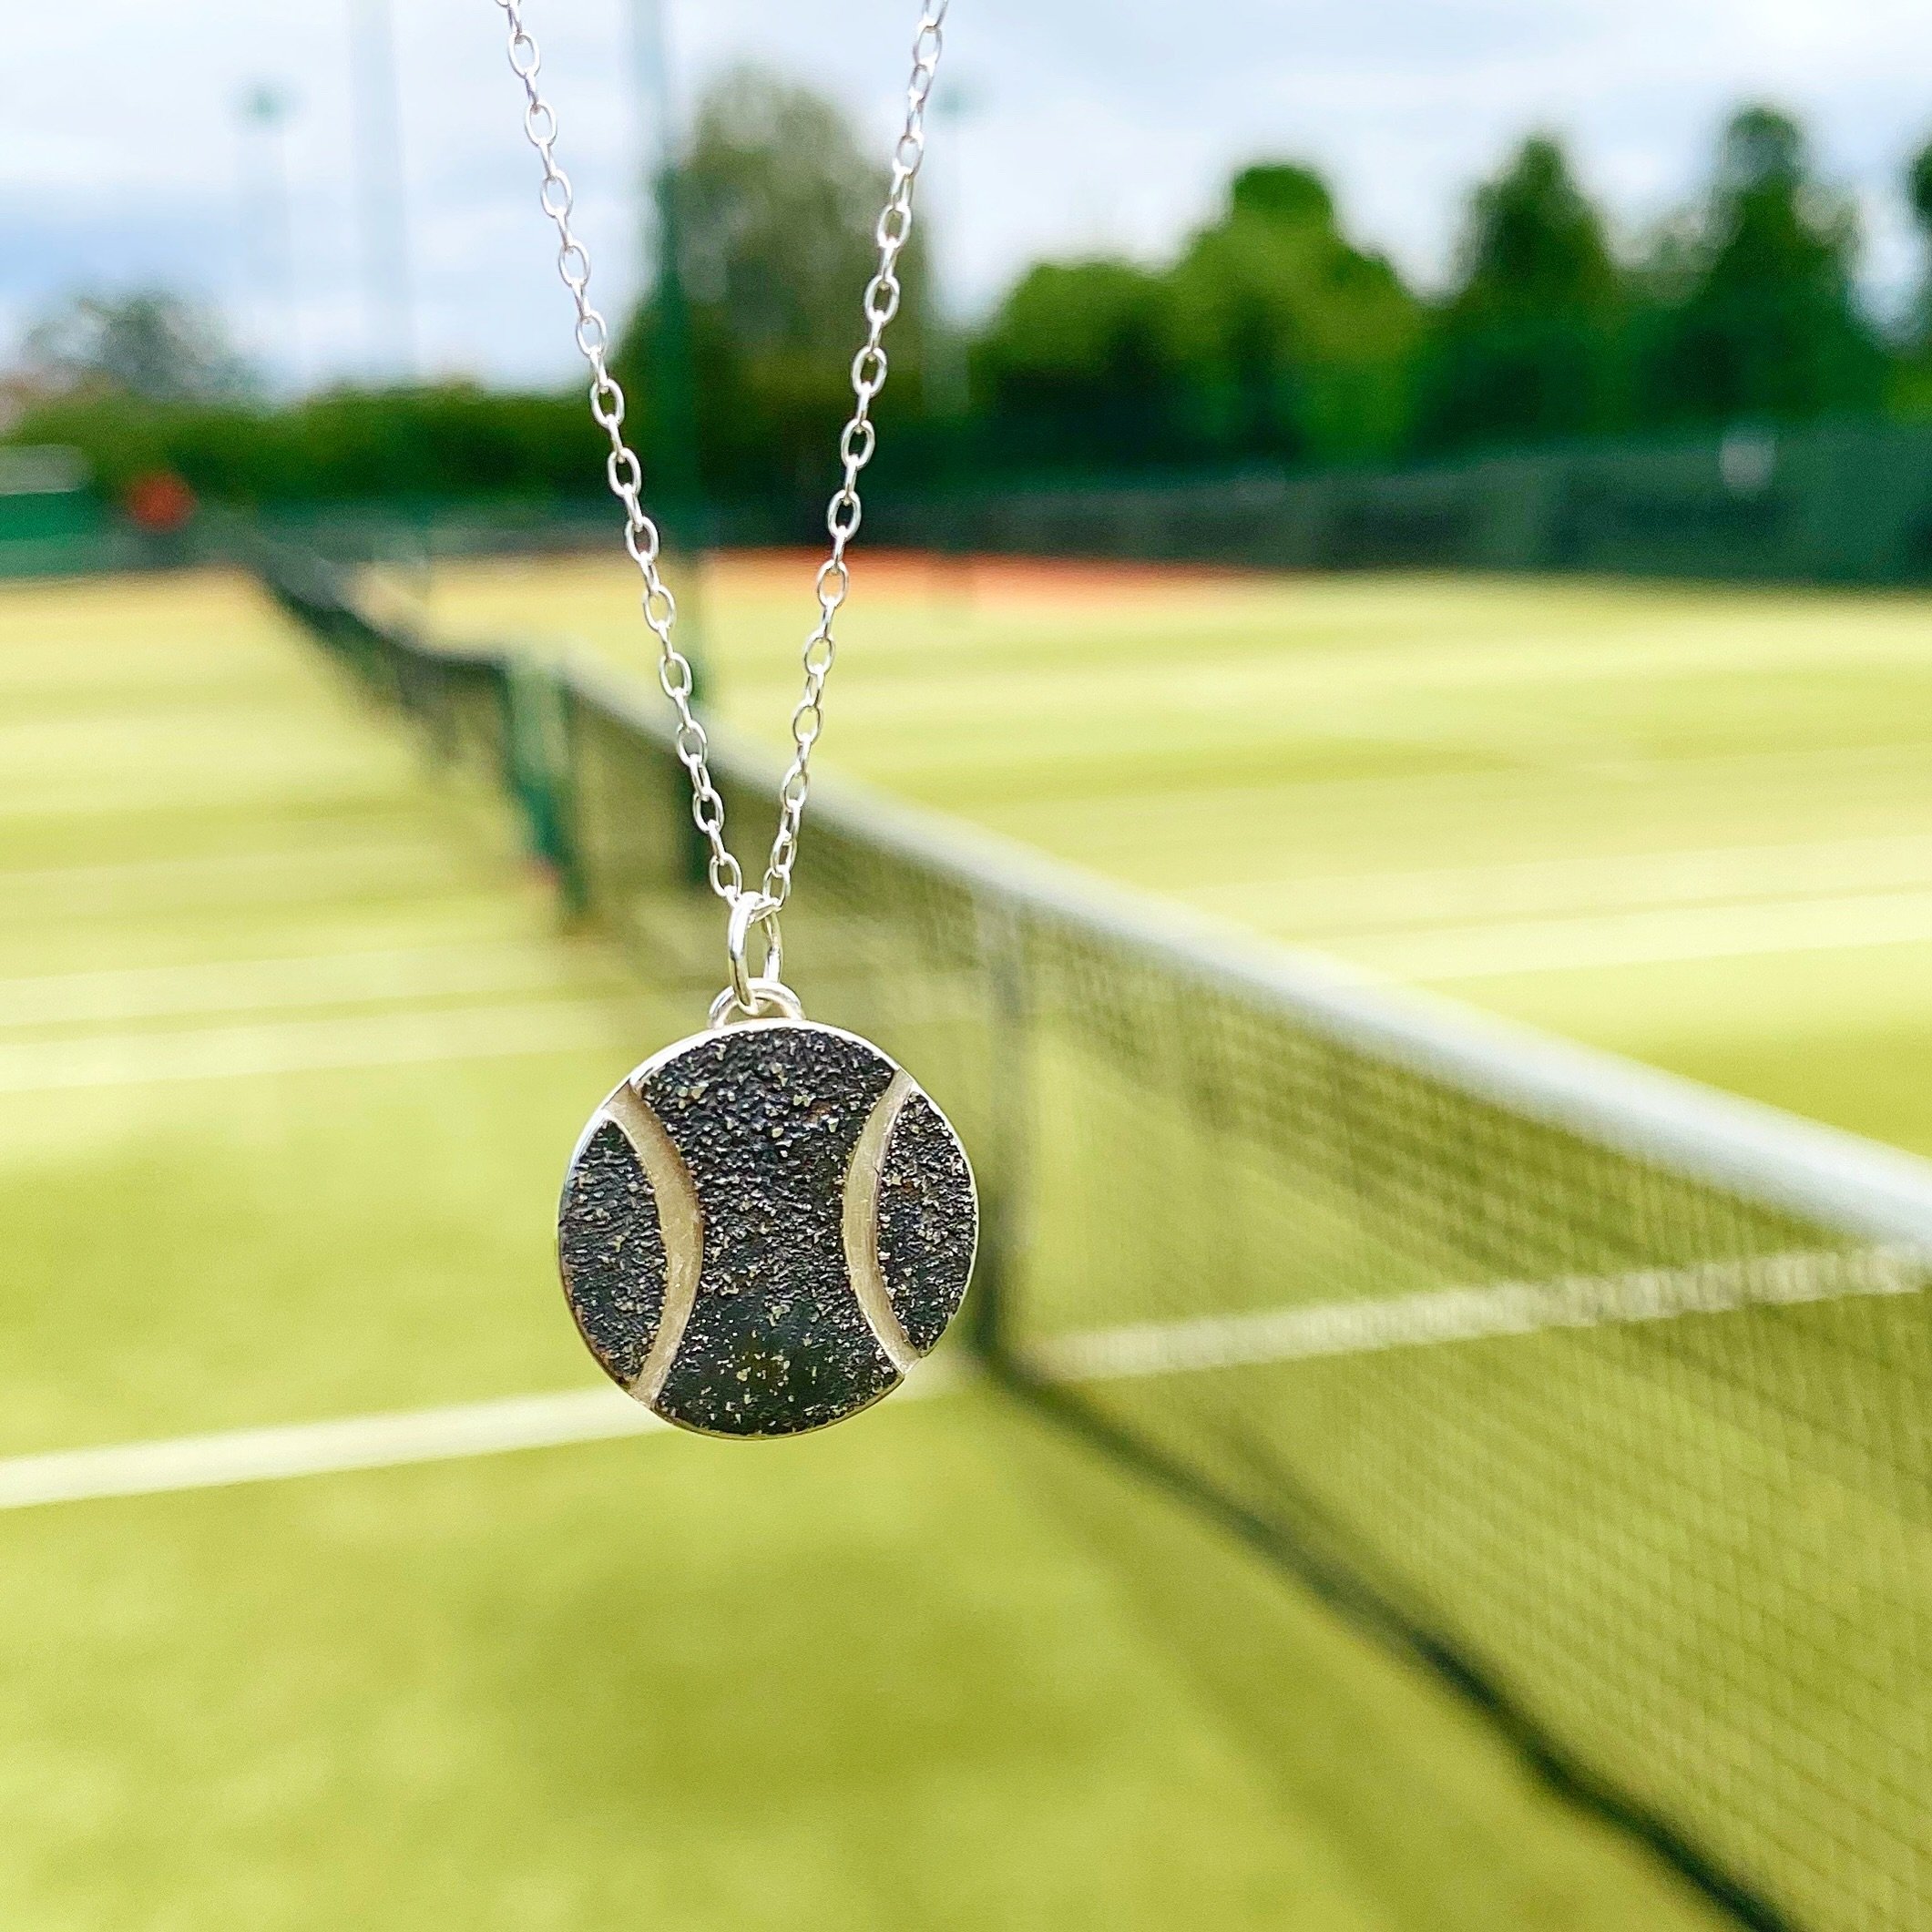 Oh hey, @zendaya, fancy a tennis ball necklace?! 🎾🎾🎾

#challengers #zendaya #tennisnecklace #tennisjewellery #joyfullyhandcraftedjewellery #tashiduncan @challengersmovie